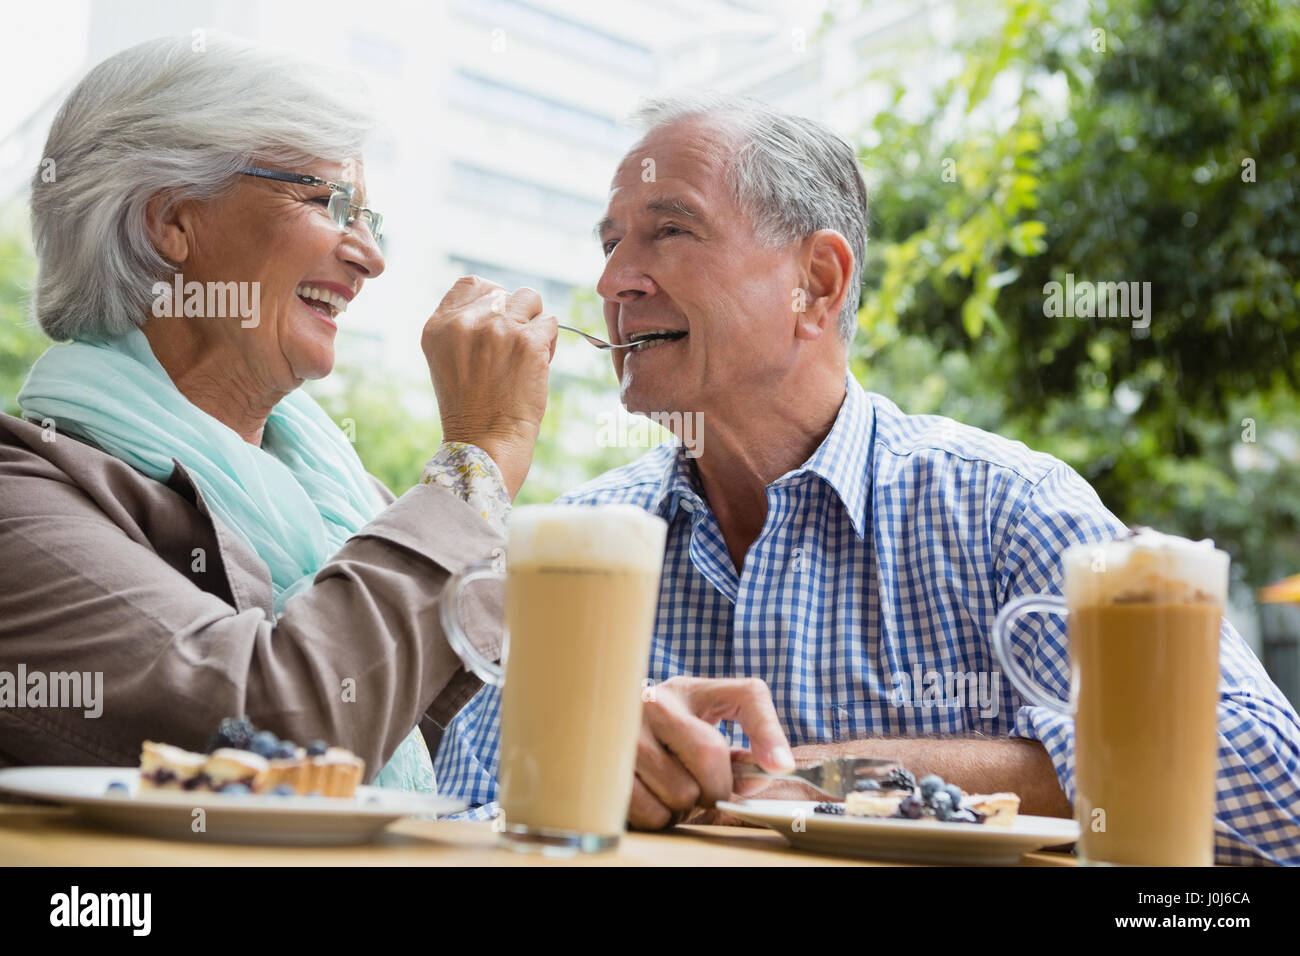 Smiling senior woman feeding tart to man in outdoor cafÃƒÂ© Stock Photo